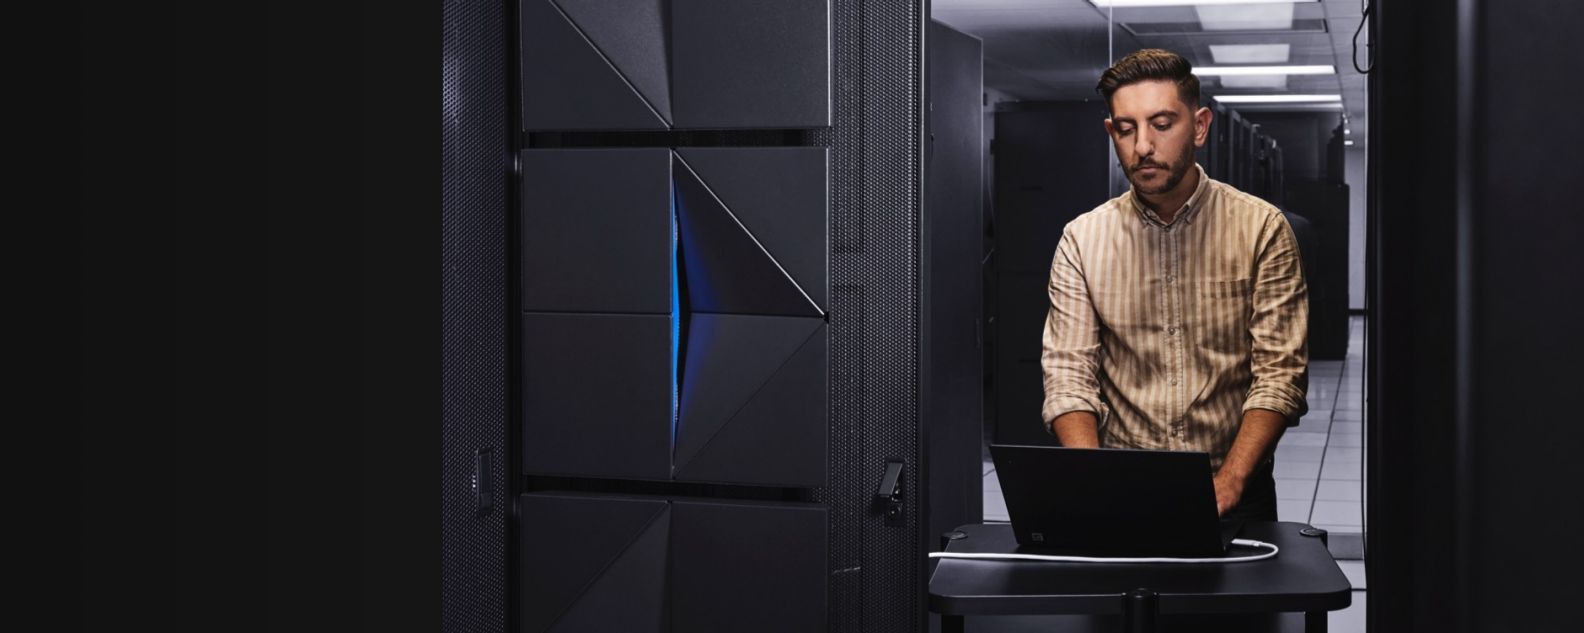 Sala de servidores mainframe com uma pessoa no computador